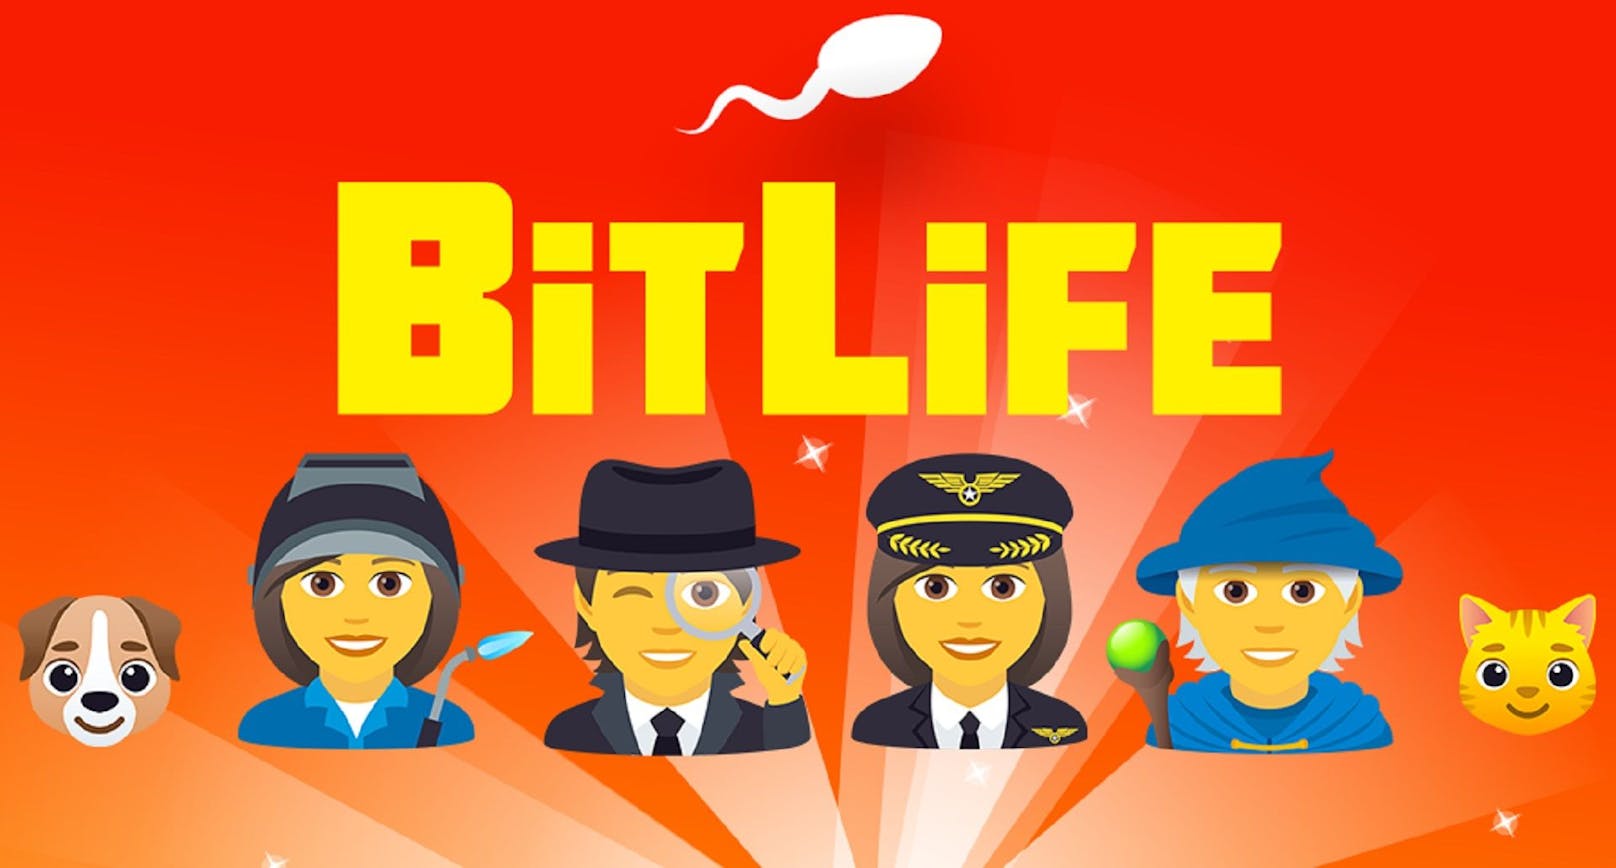 72 Millionen virtuelle Leben in einem Jahr: BitLife überzeugt international.